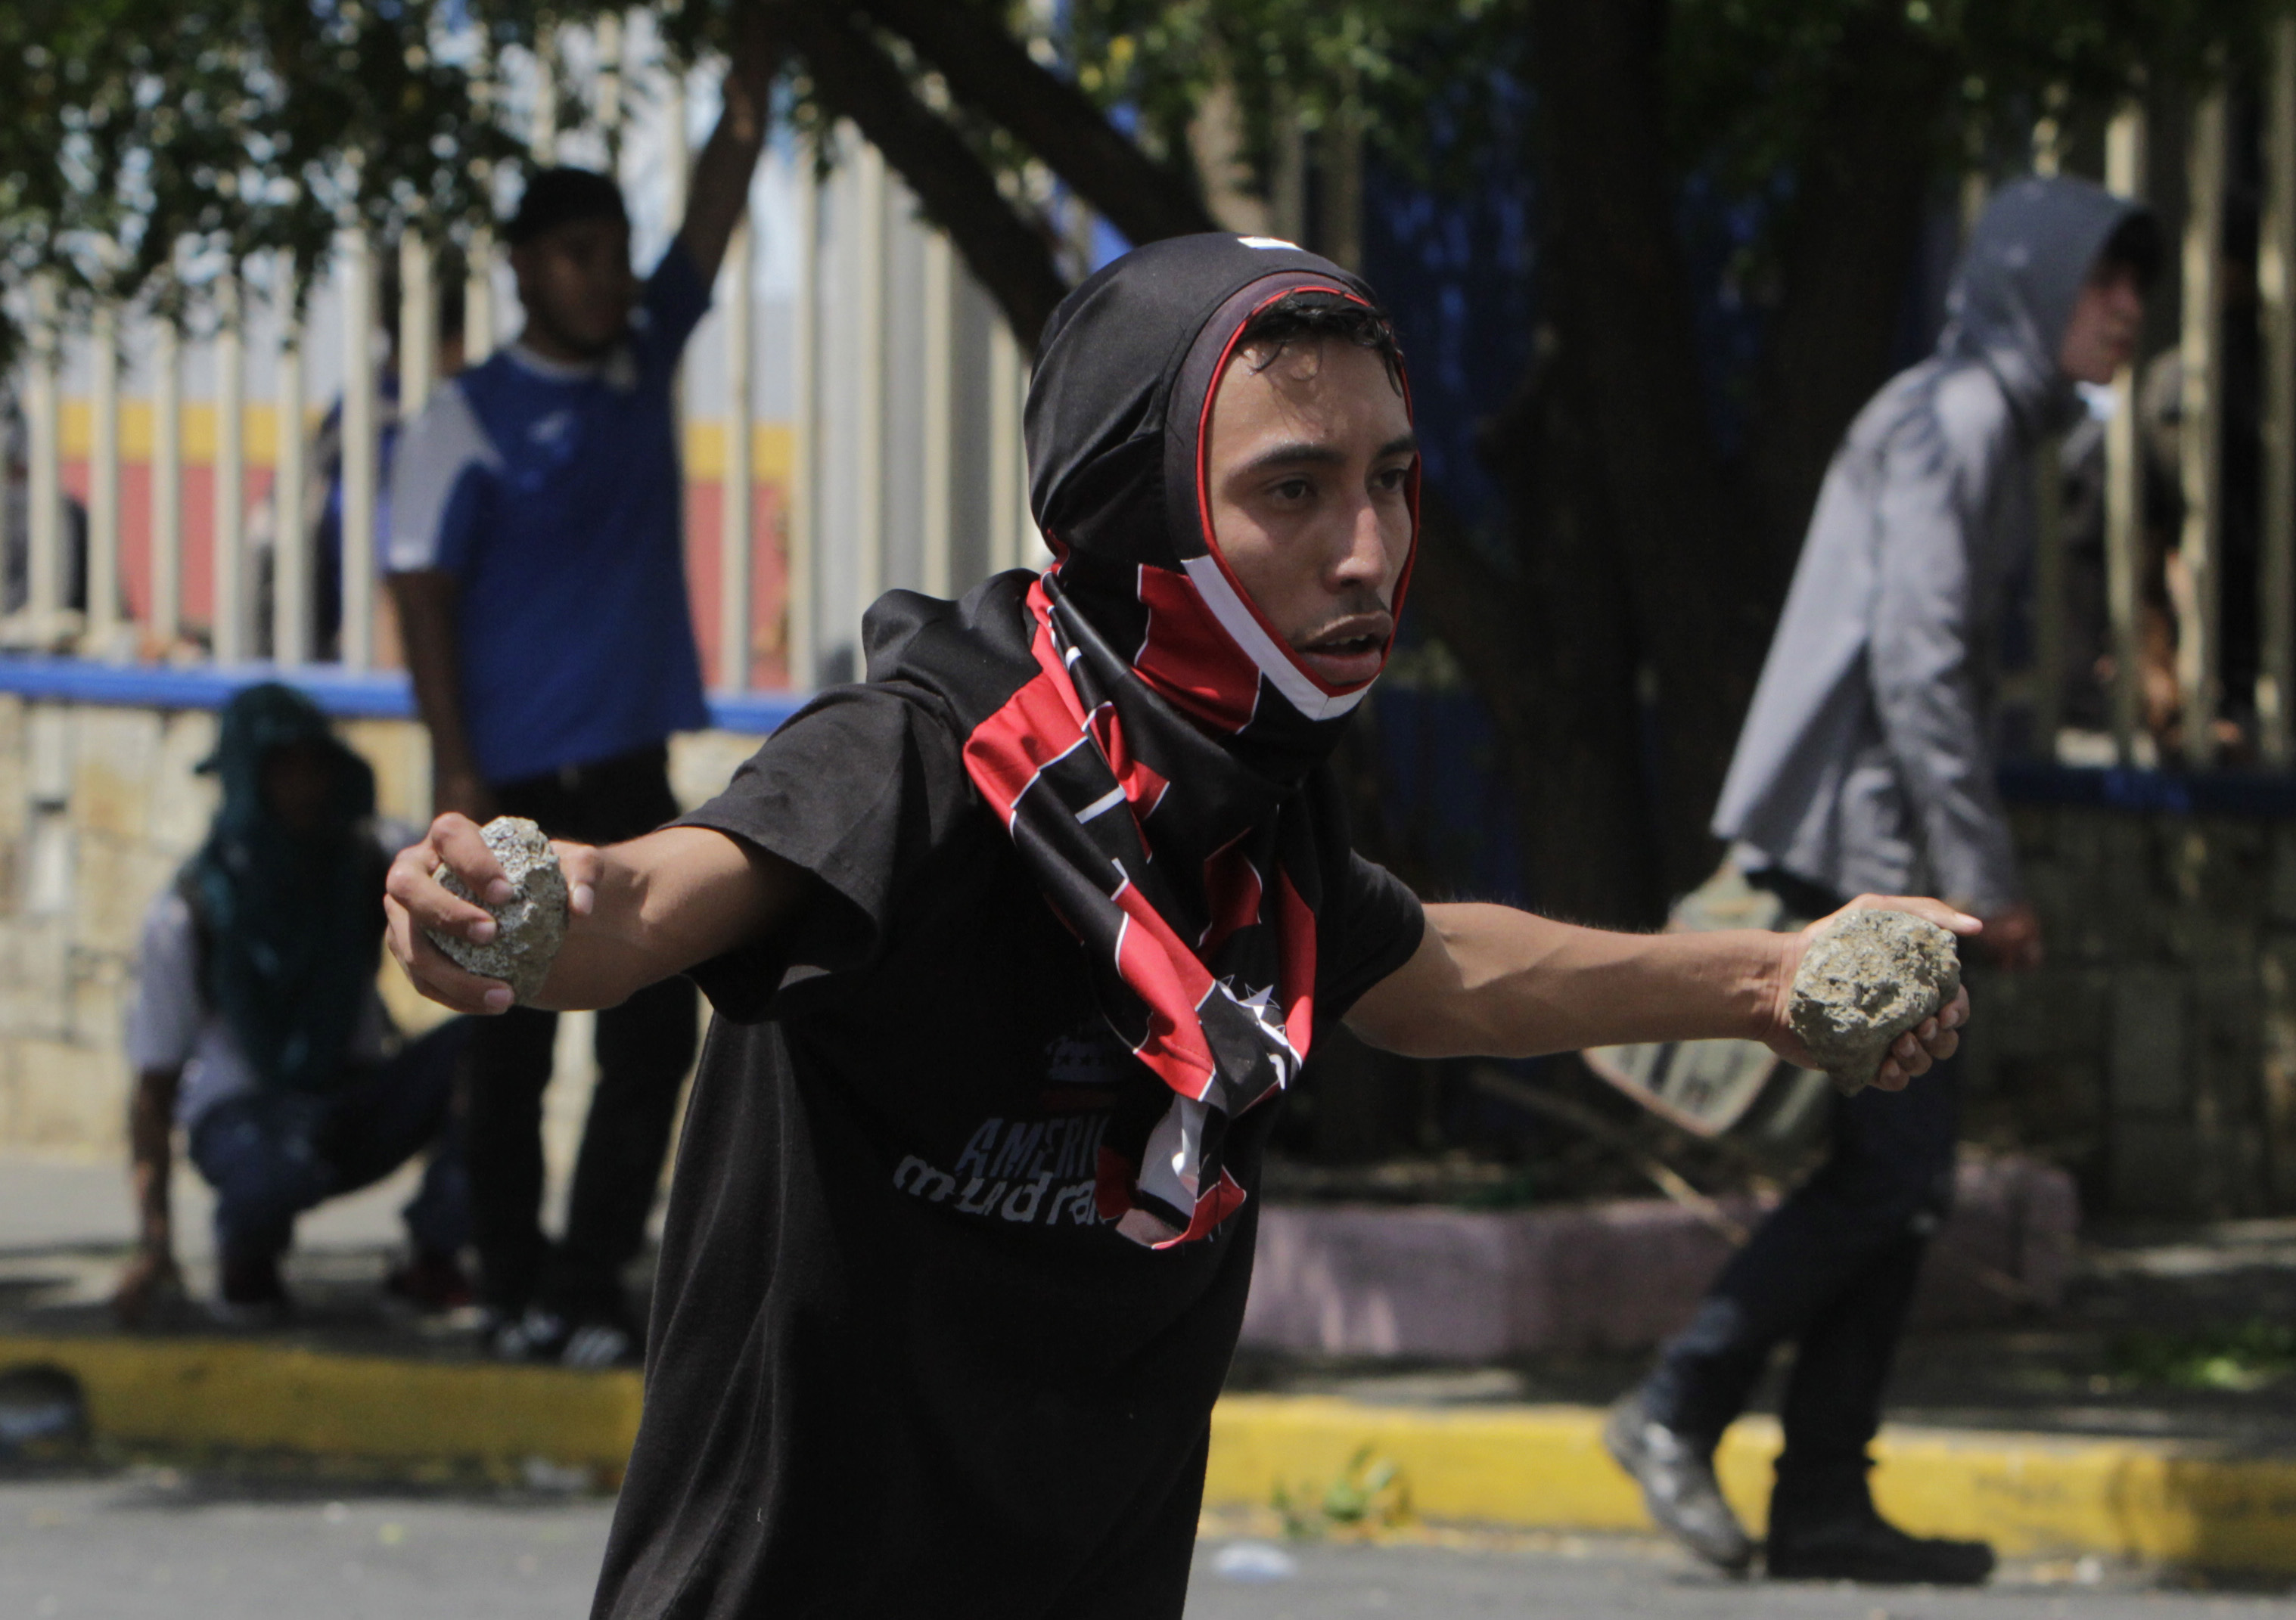 طالب فى يده الحجارة خلال الاشتباك مع قوات الأمن